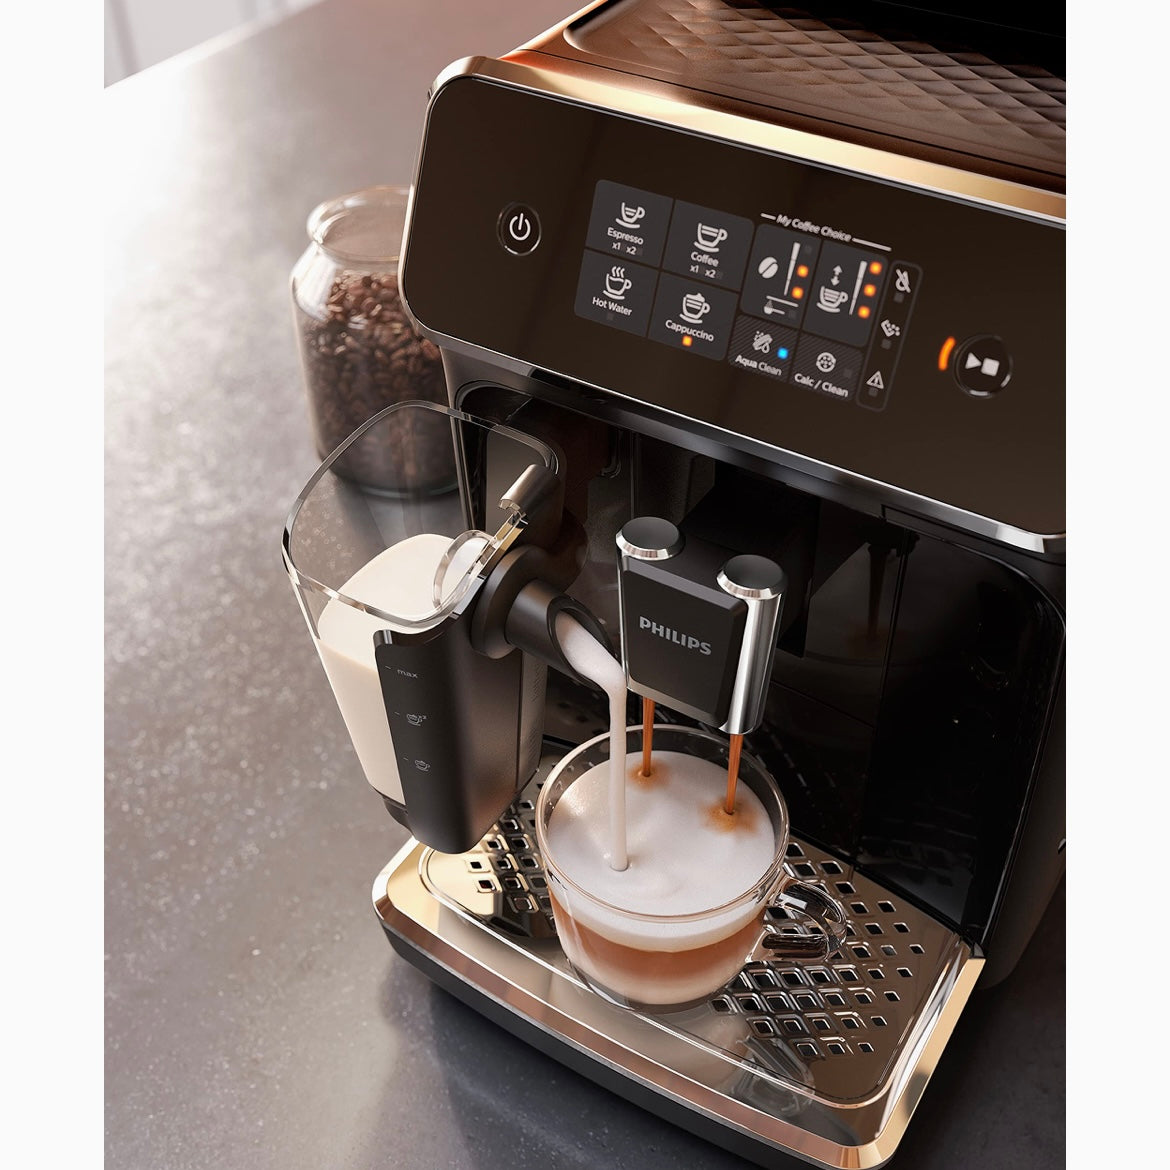 Cafetera superautomatica Philips en oferta flash . ¿Vale la pena? -  Forocoches